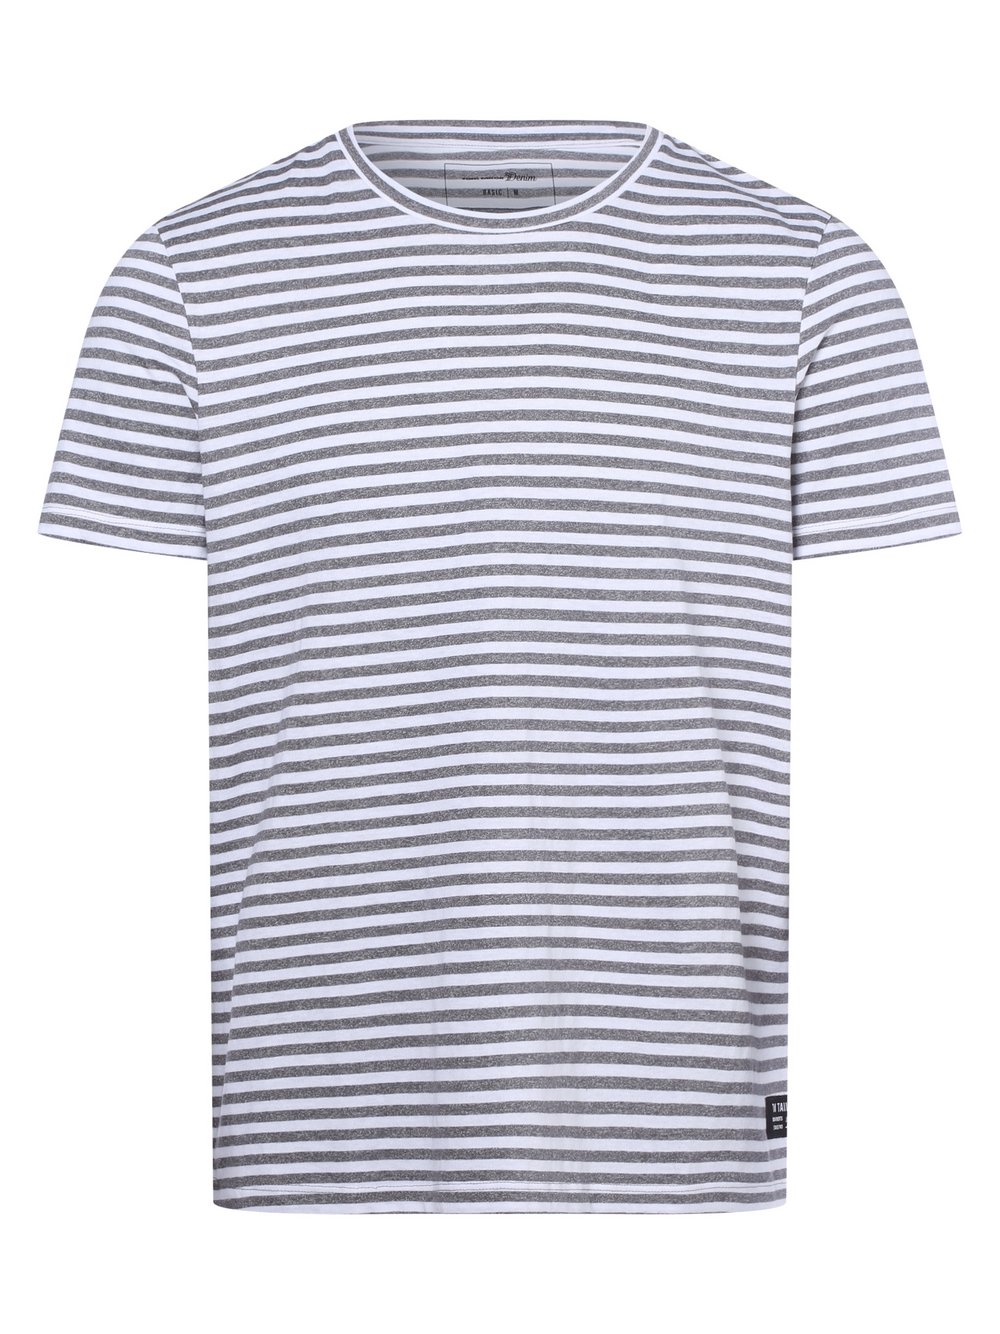 Tom Tailor Denim - T-shirt męski, szary|biały